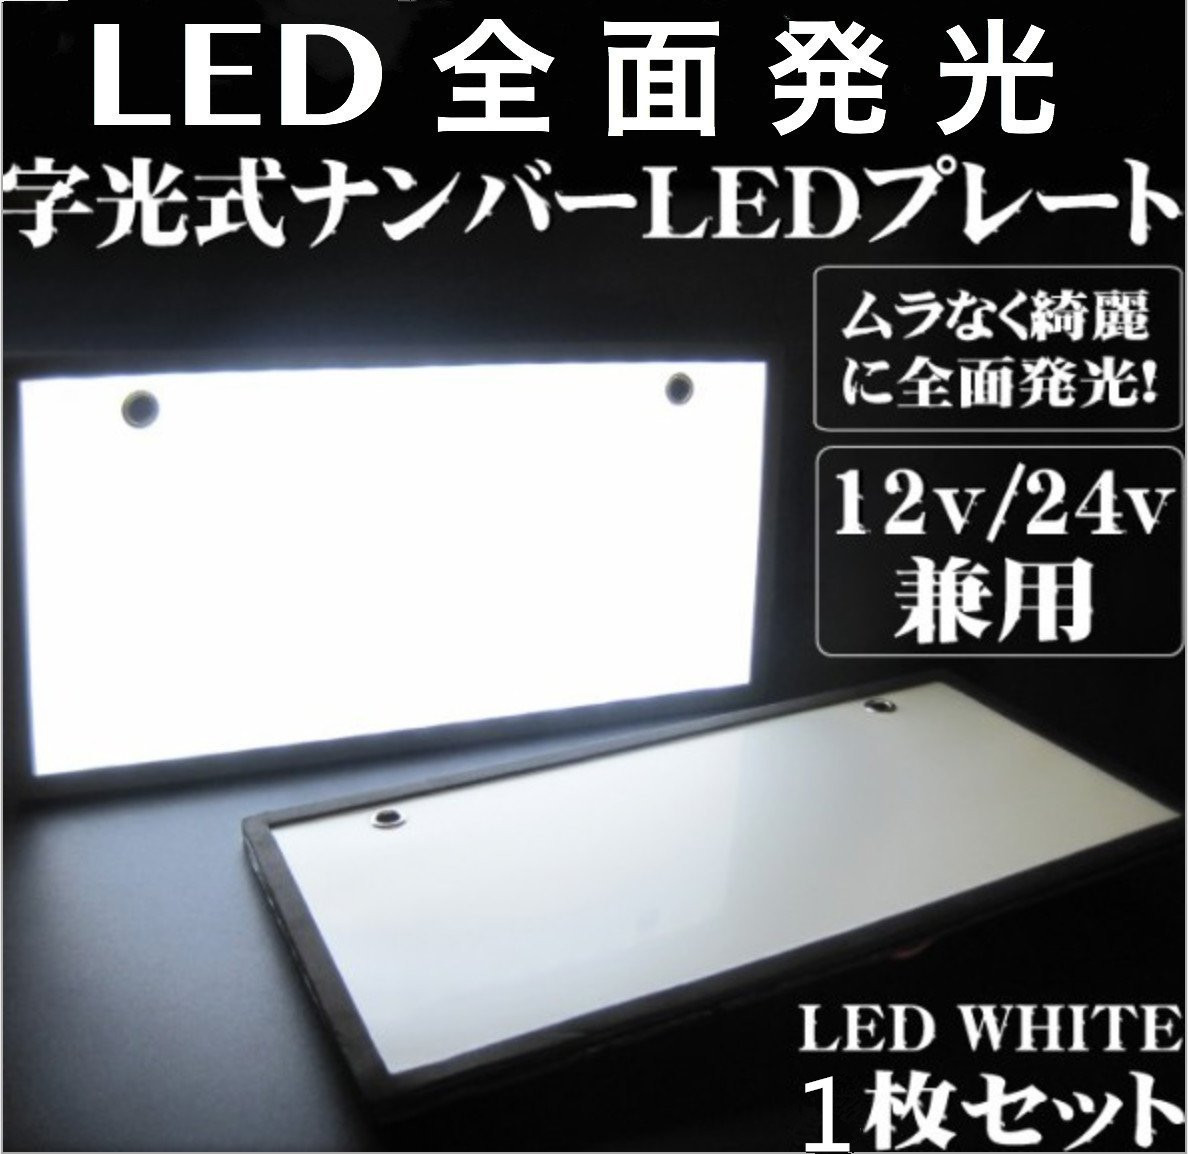 【送料無料】 LED 字光式ナンバープレート用LED お得な1枚セット 全面発光 12V用 /24V用 薄型 最安 LED ライト 装飾フレーム 電光式1_画像1